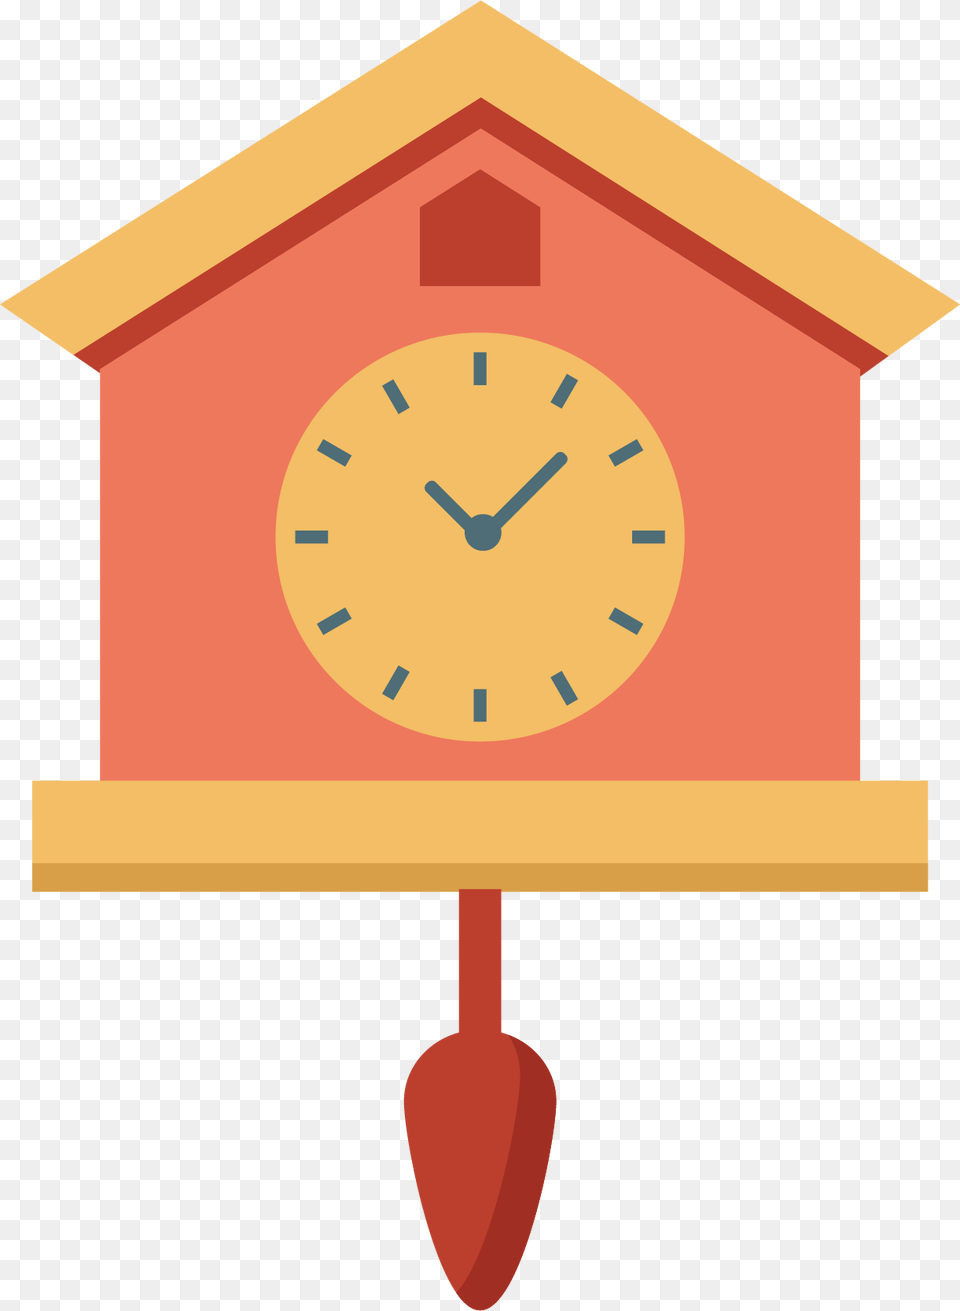 Image Alarm Clipart Timeclock Cartoon Wall Clock, Analog Clock, Mailbox Free Transparent Png